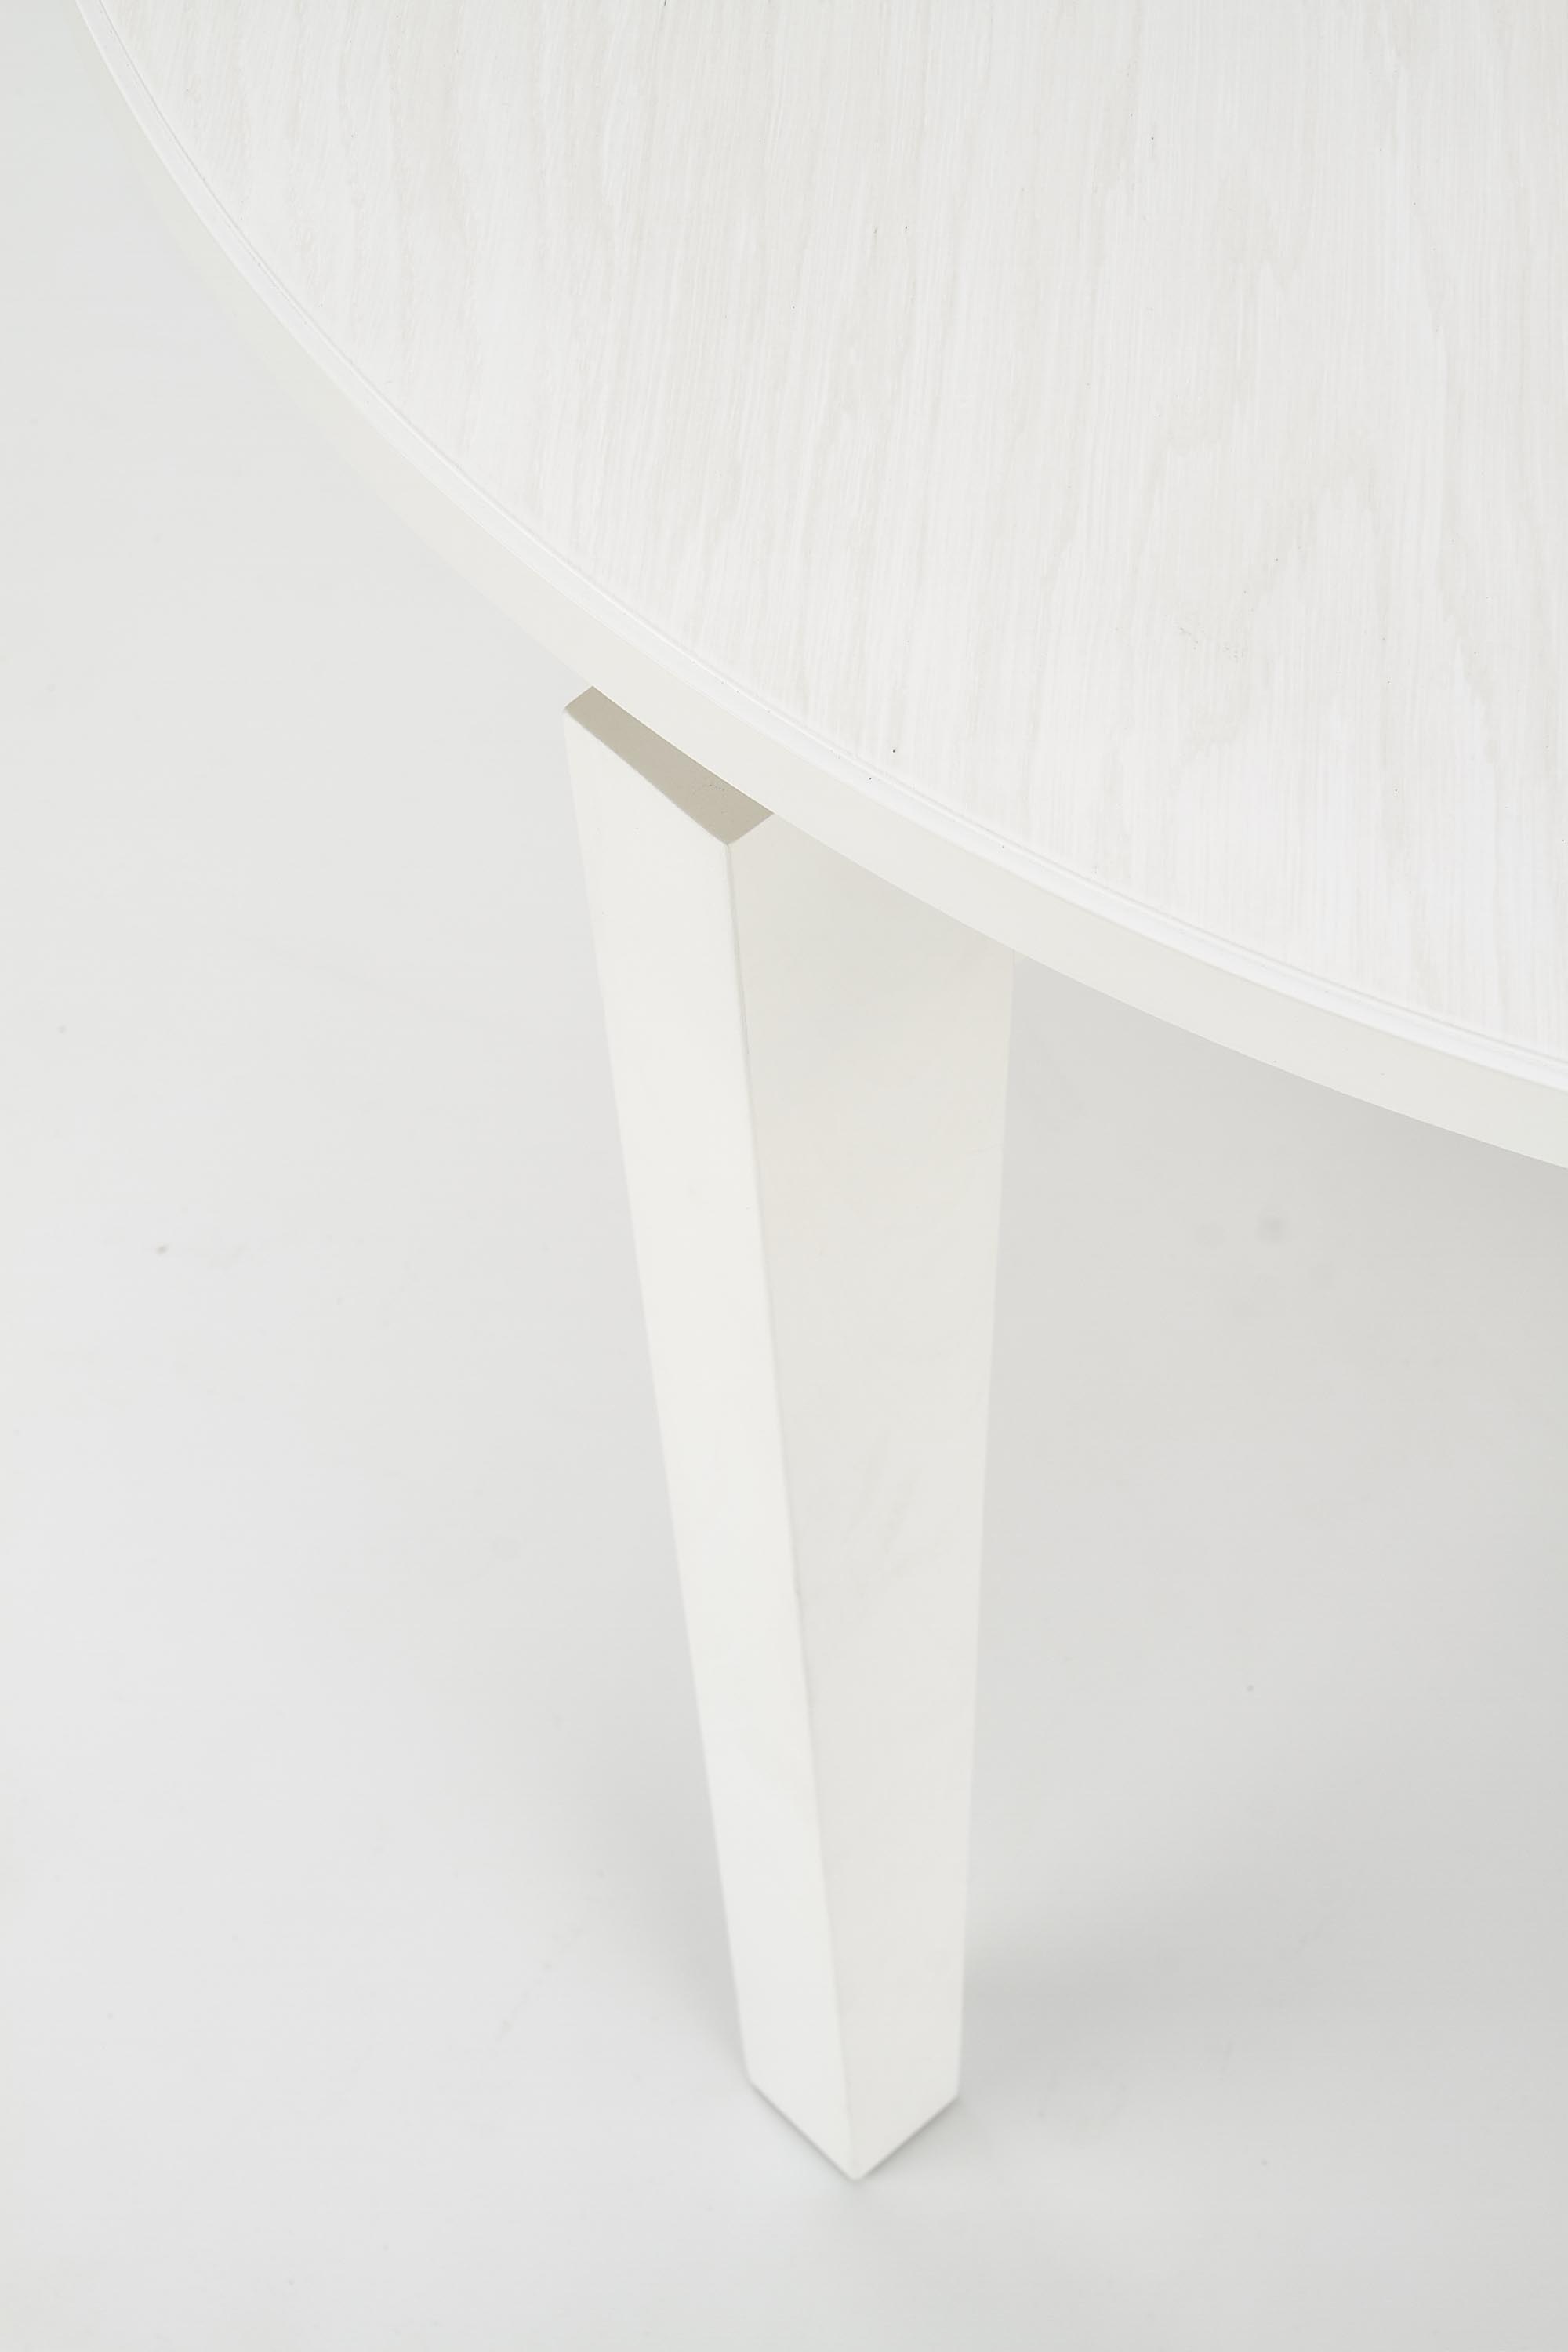 Stůl rozkládací Sorbus - Bílý stůl rozkladany sorbus - Bílý